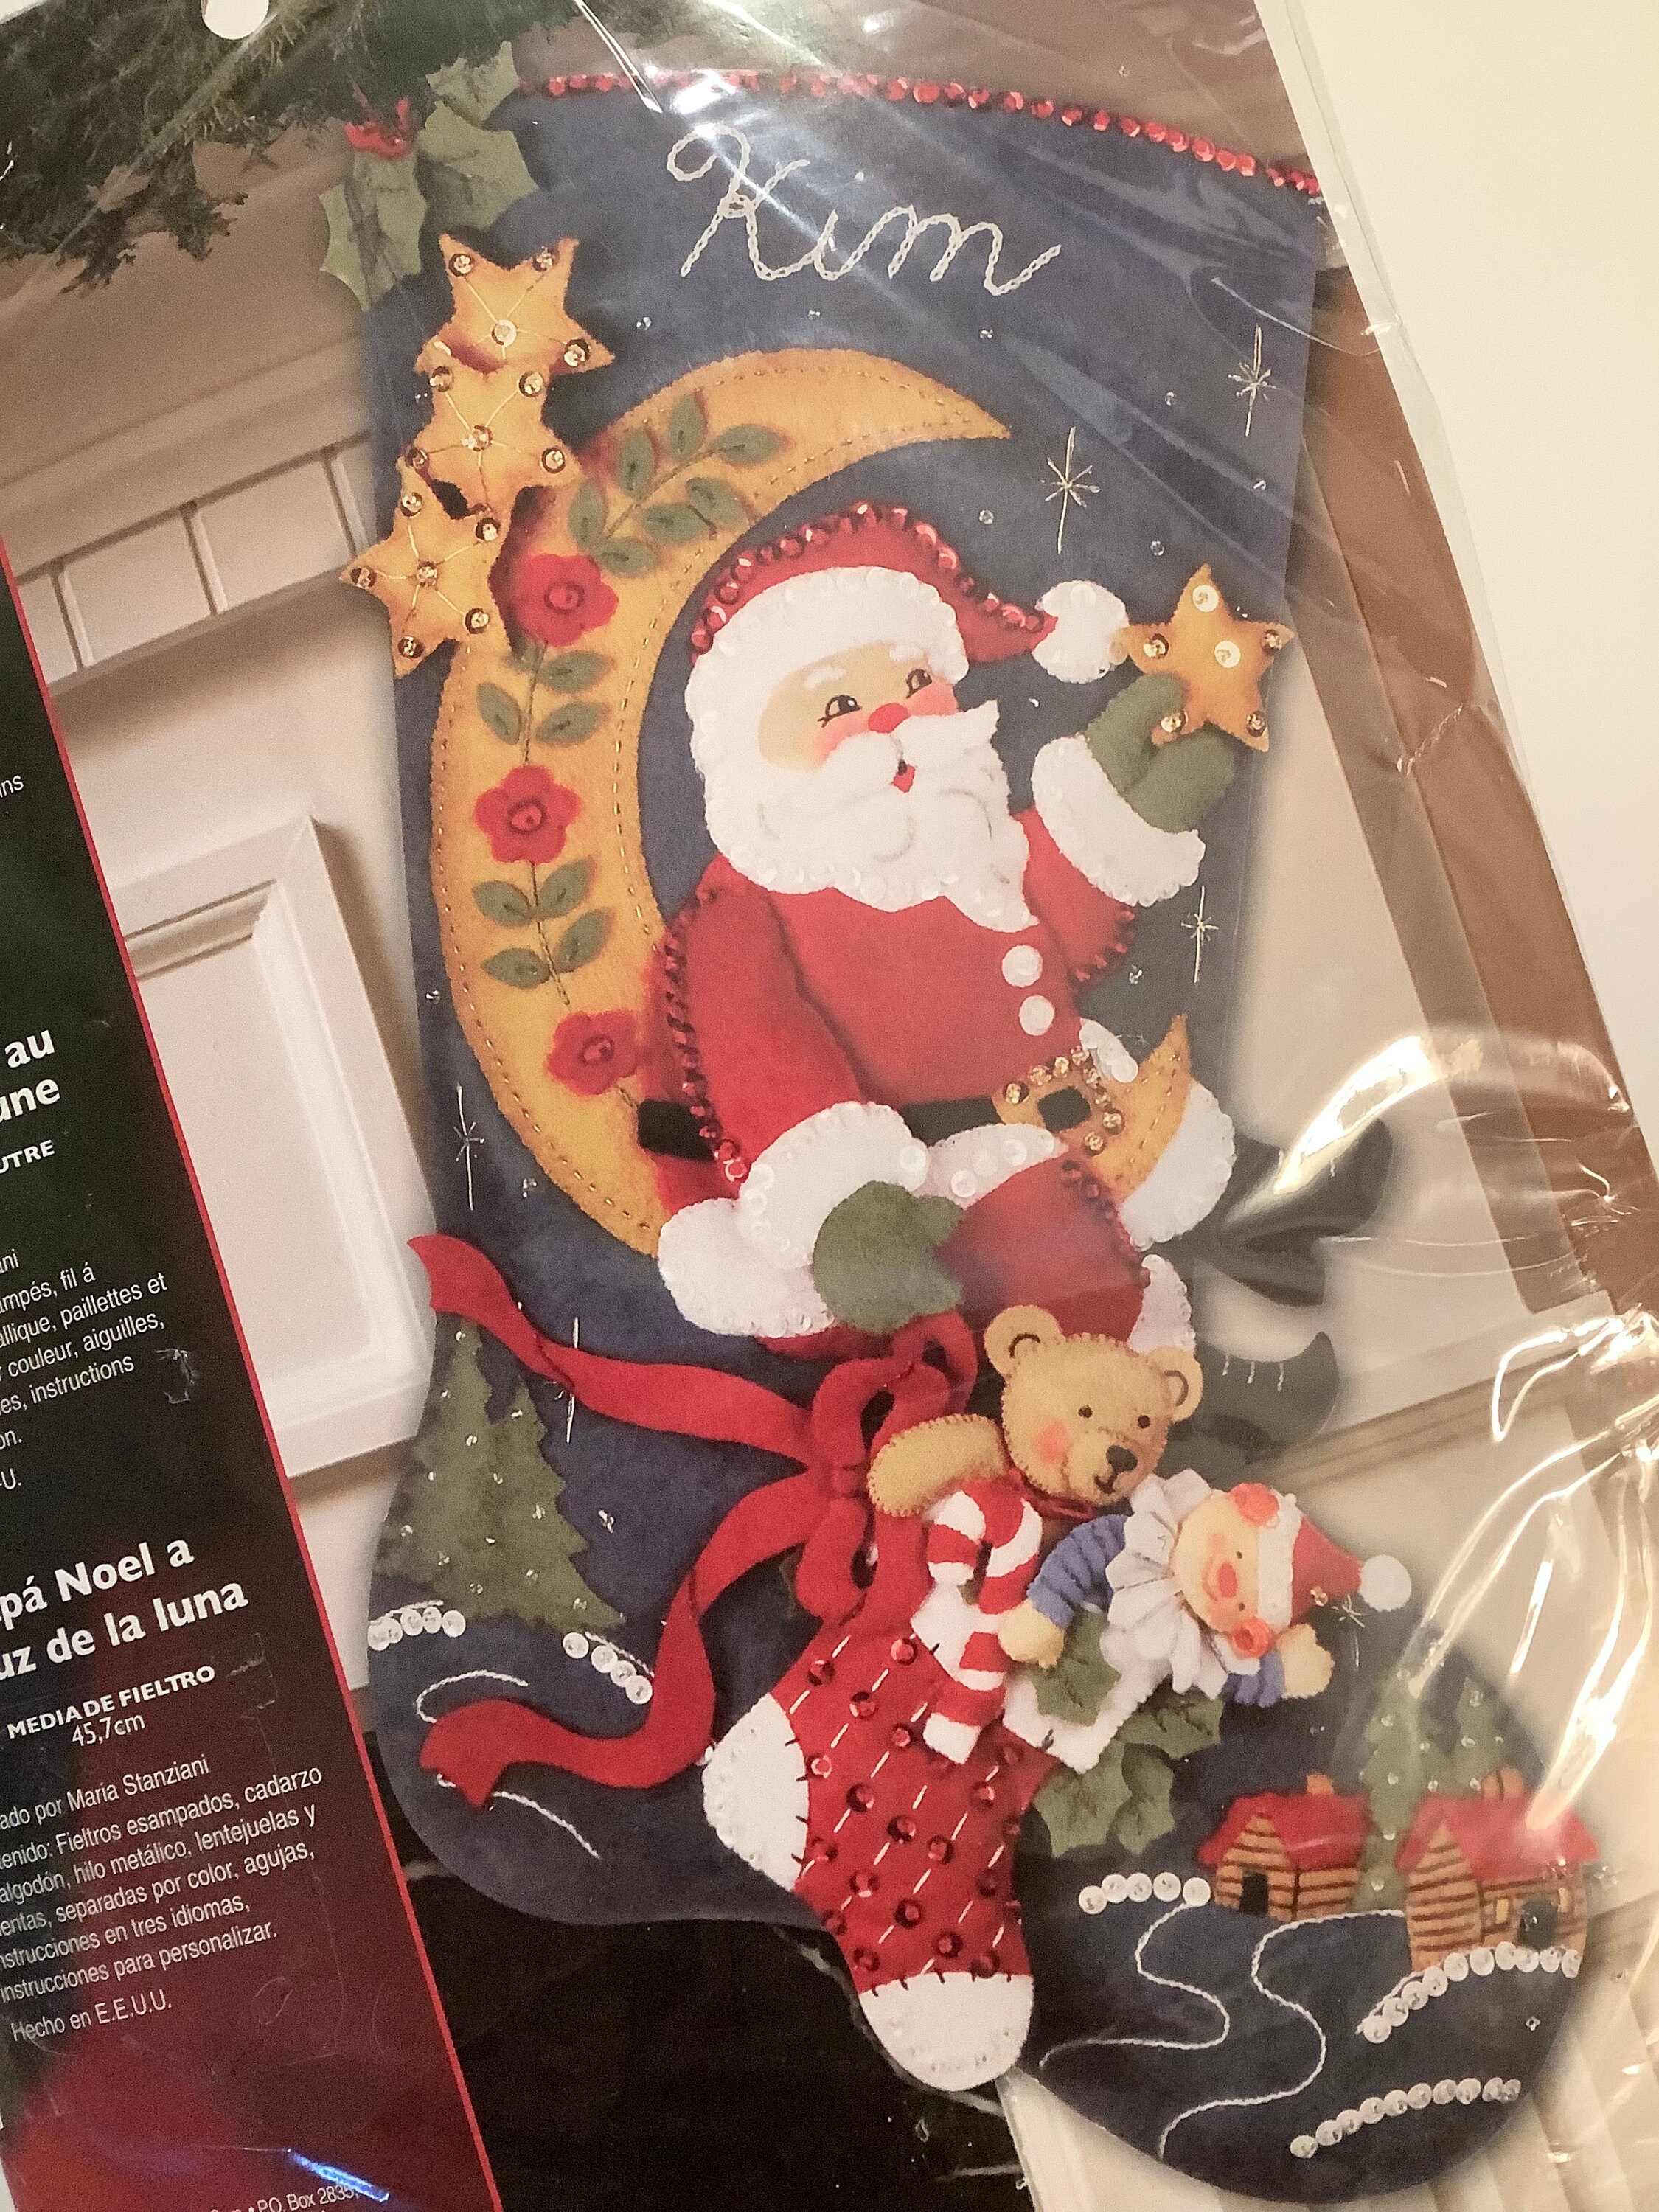 Bucilla Felt Applique Christmas Stocking Kit MOONLIGHT SANTA 18 inch